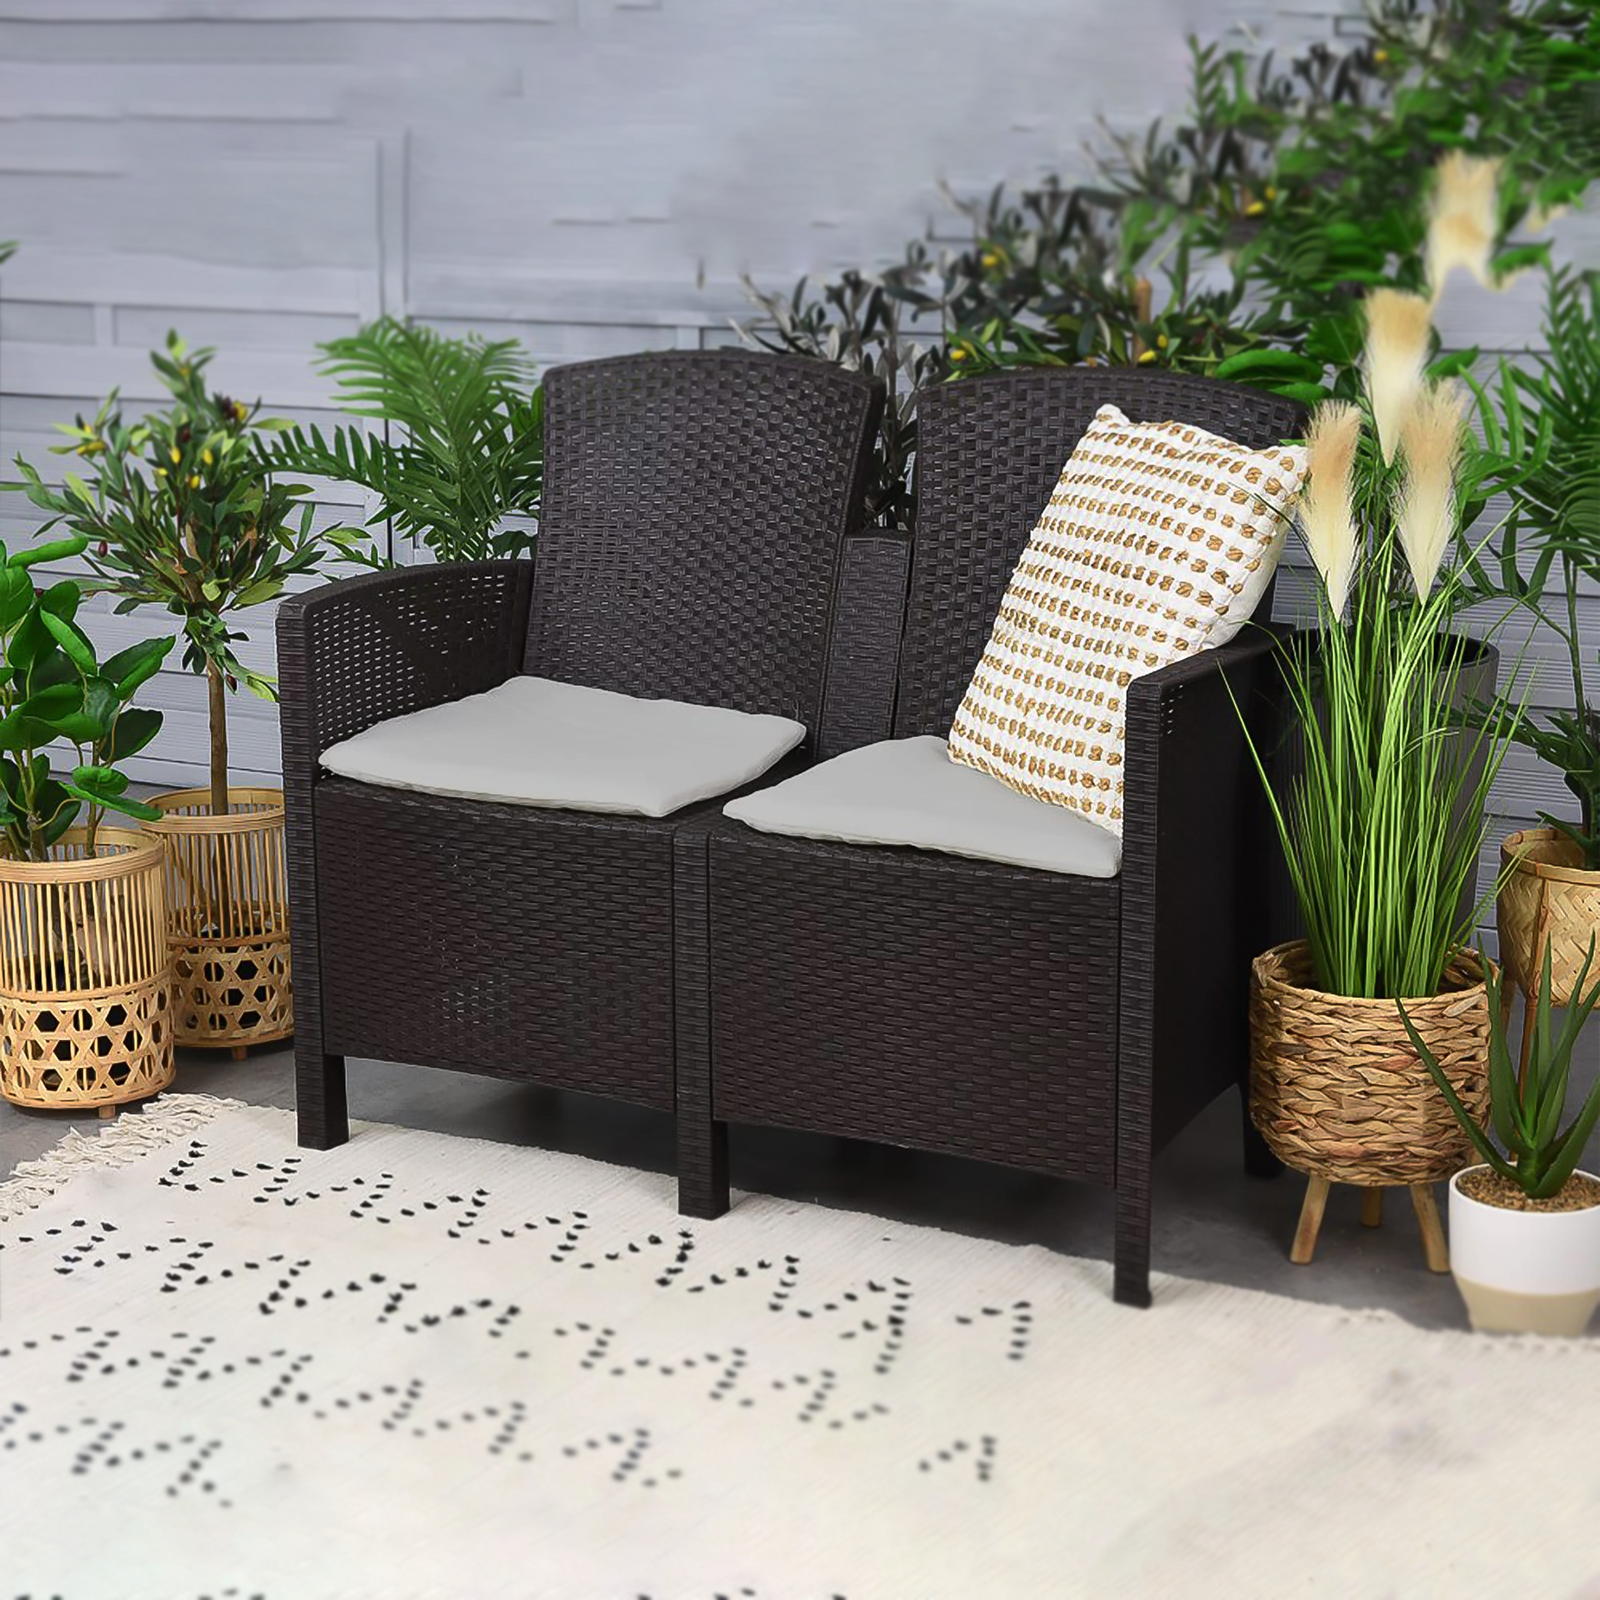 Salón de jardín "Lido" de resina de ratán, mesa de centro + sofá + 2 sillones con cojines